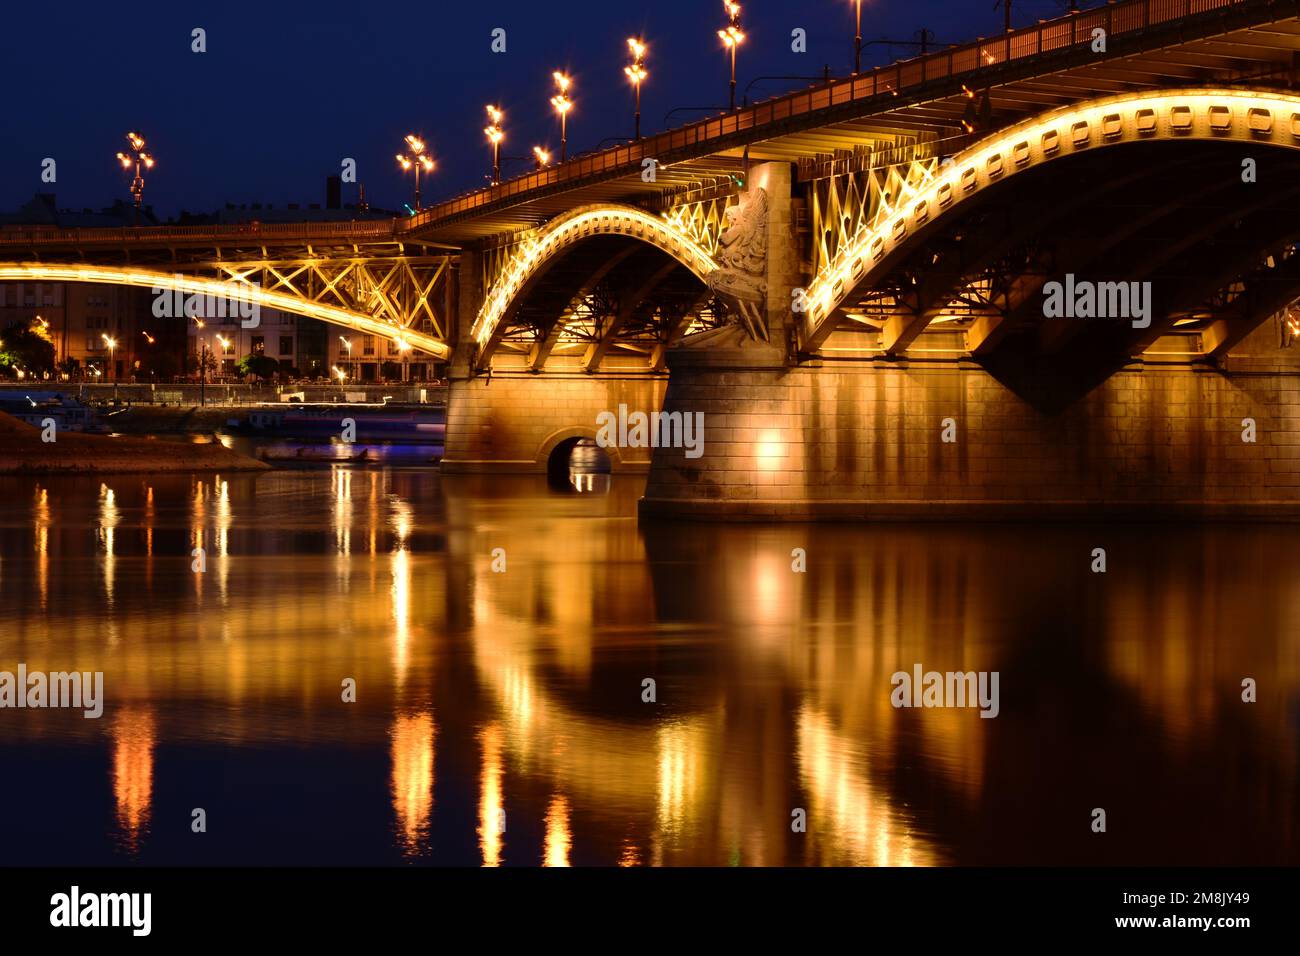 Die Margaretenbrücke in Budapest in der Dämmerung. Perspektivische Seitenansicht. Hell beleuchtete Stahlbögen. Reflexion über das Wasser. Tourismus und Reisekonzept Stockfoto